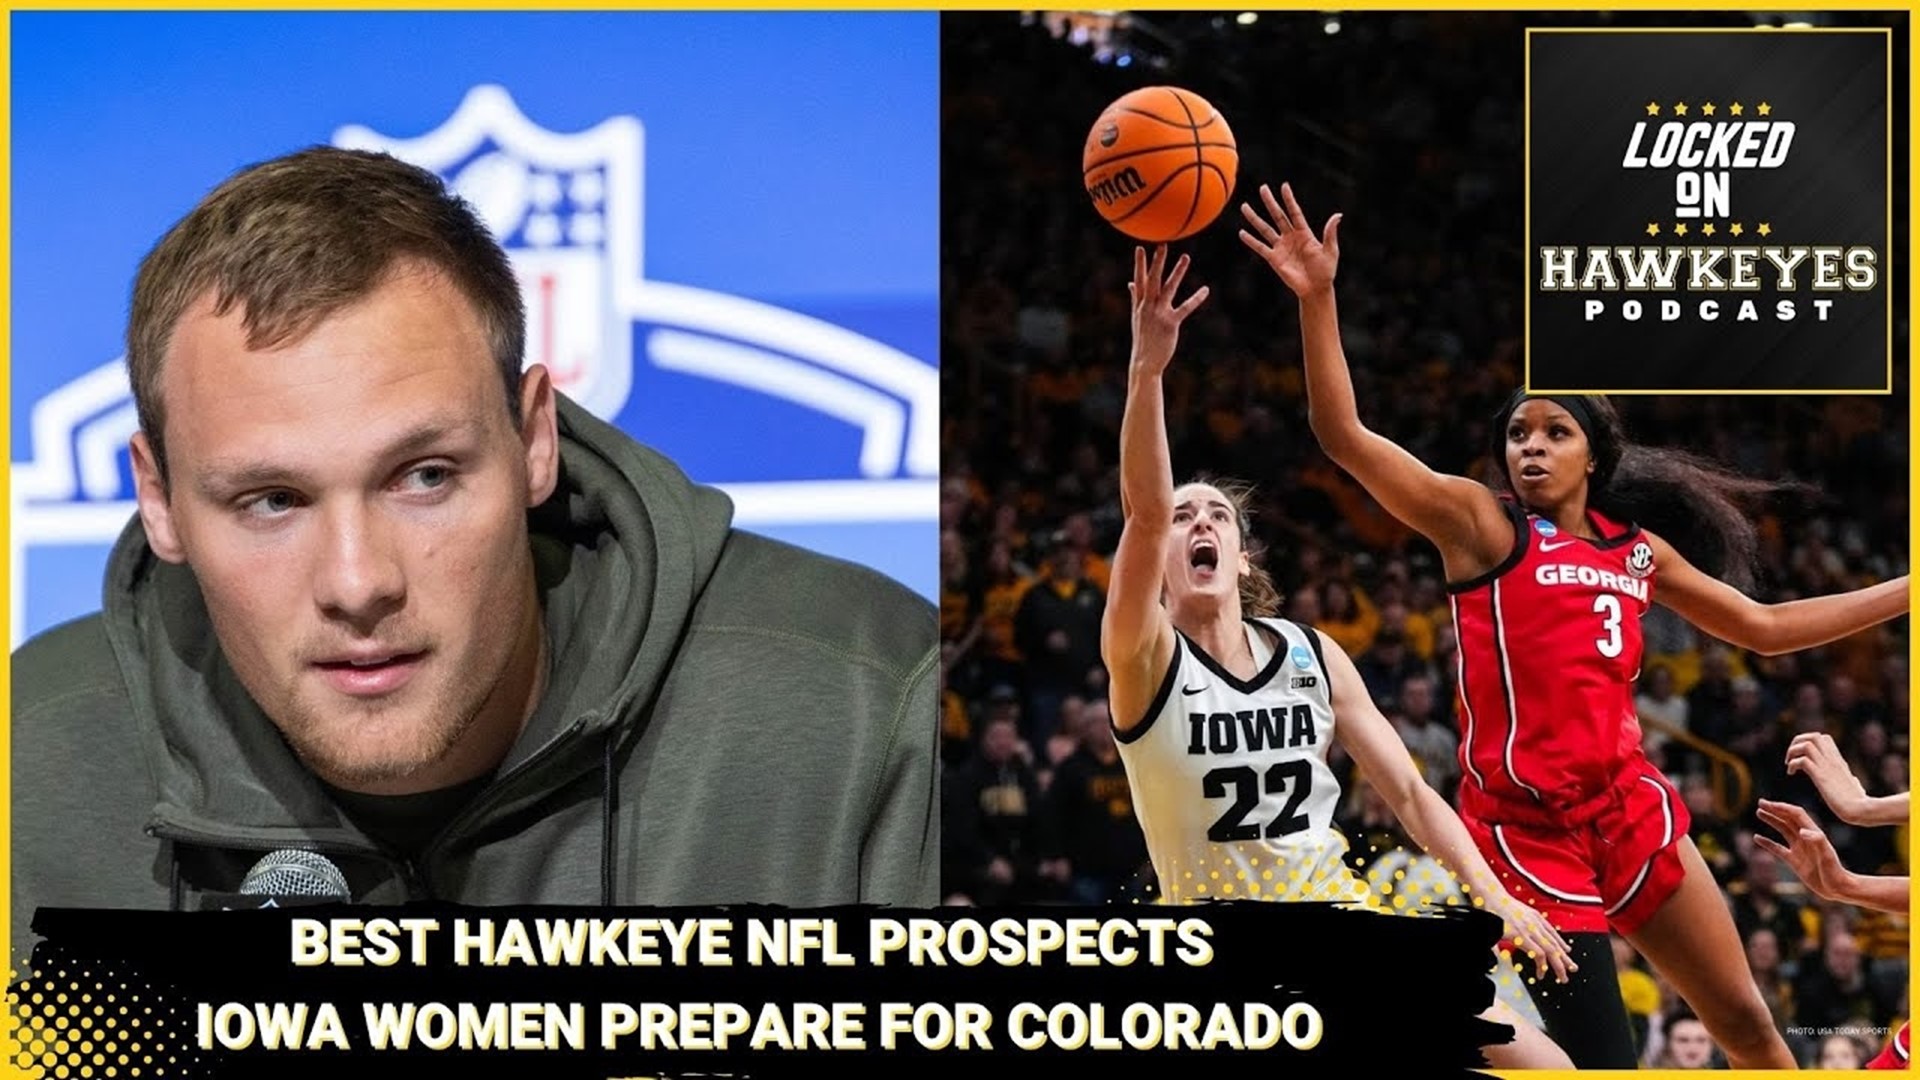 The Best Hawkeye NFL Prospects, Iowa women prepare for Colorado in the Sweet 16